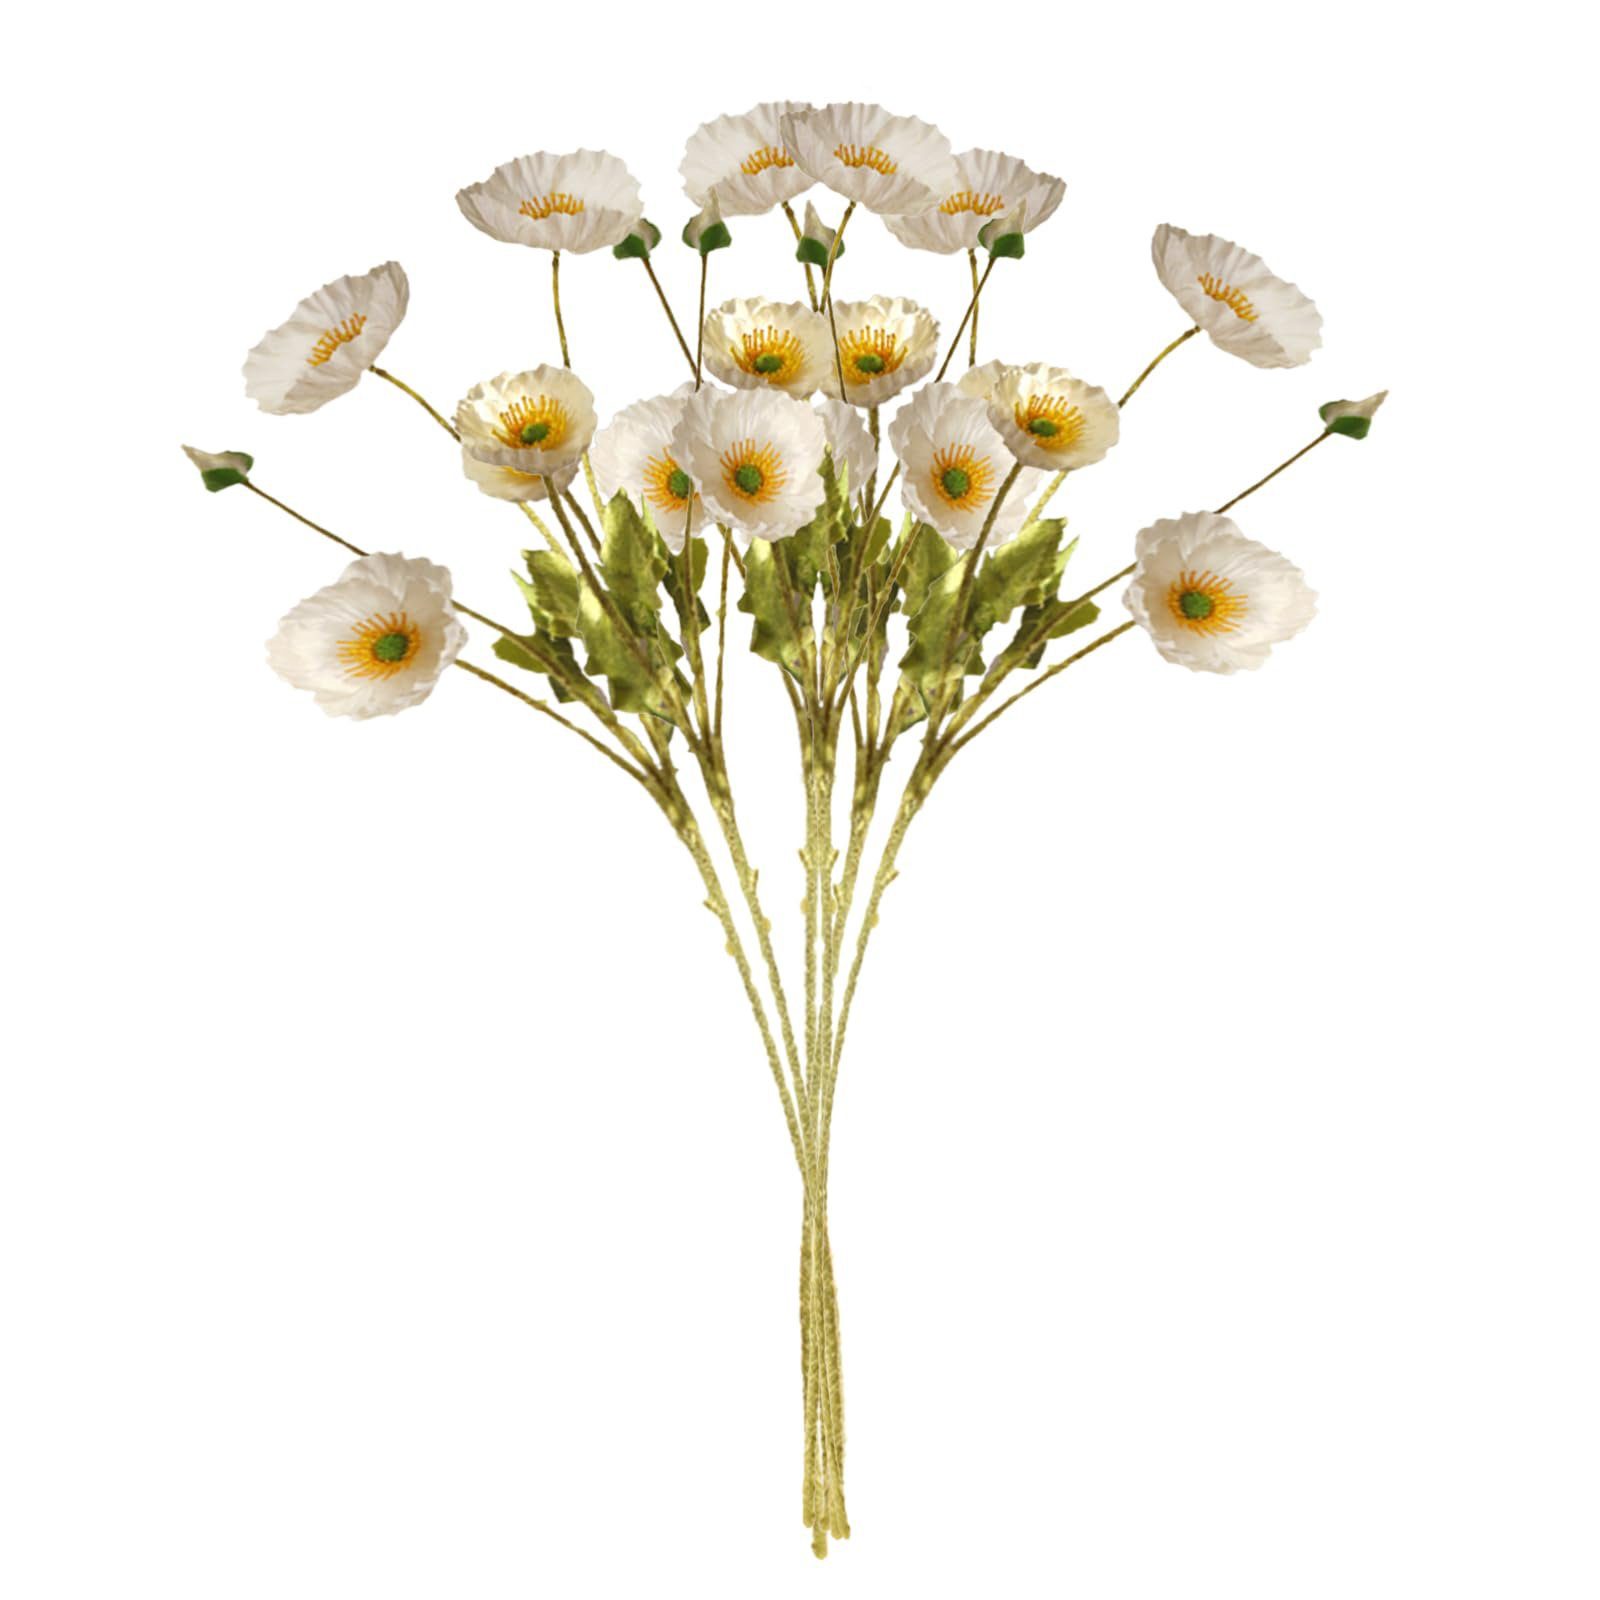 SEEZSSA, 4 Pflanzen Haus Blütenköpfen Weiß Beflockung Künstlicher Mohnblumen-Zweigmit Blumenschmuck,60cm Kunststoff, Für Kunstzweig MohnSeidenblumen künstliche lang